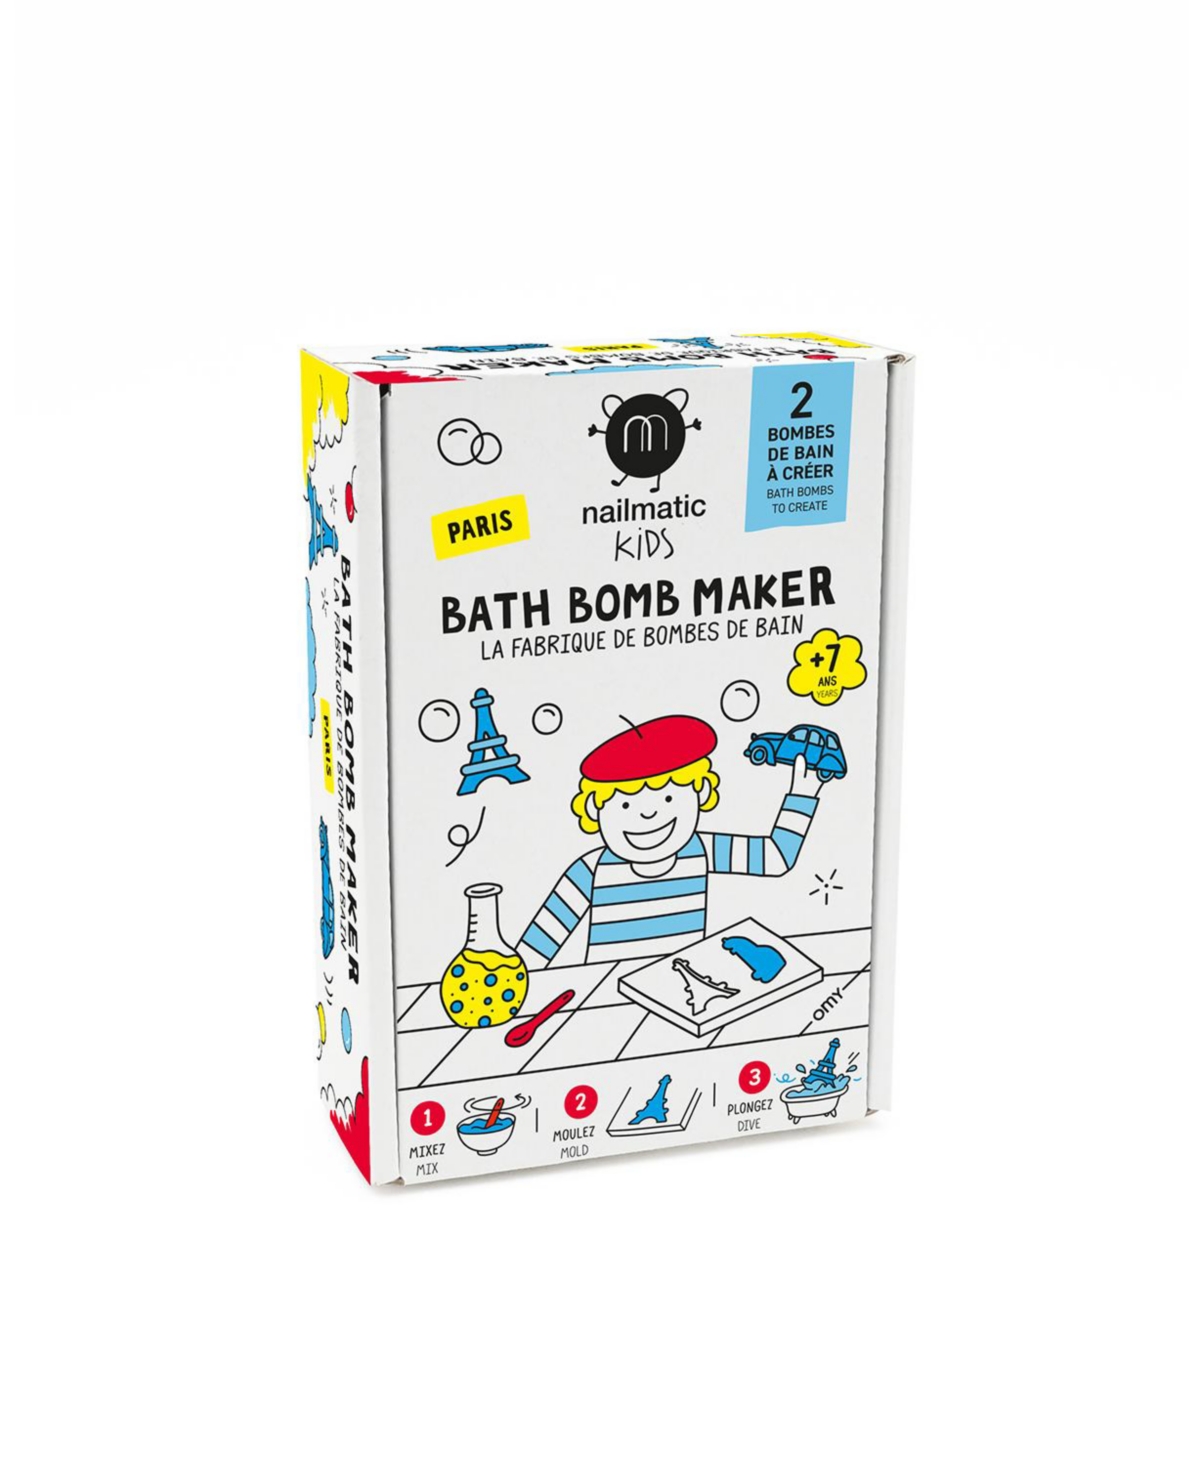 Diy bath bomb maker Paris - Assorted Pre-Pack